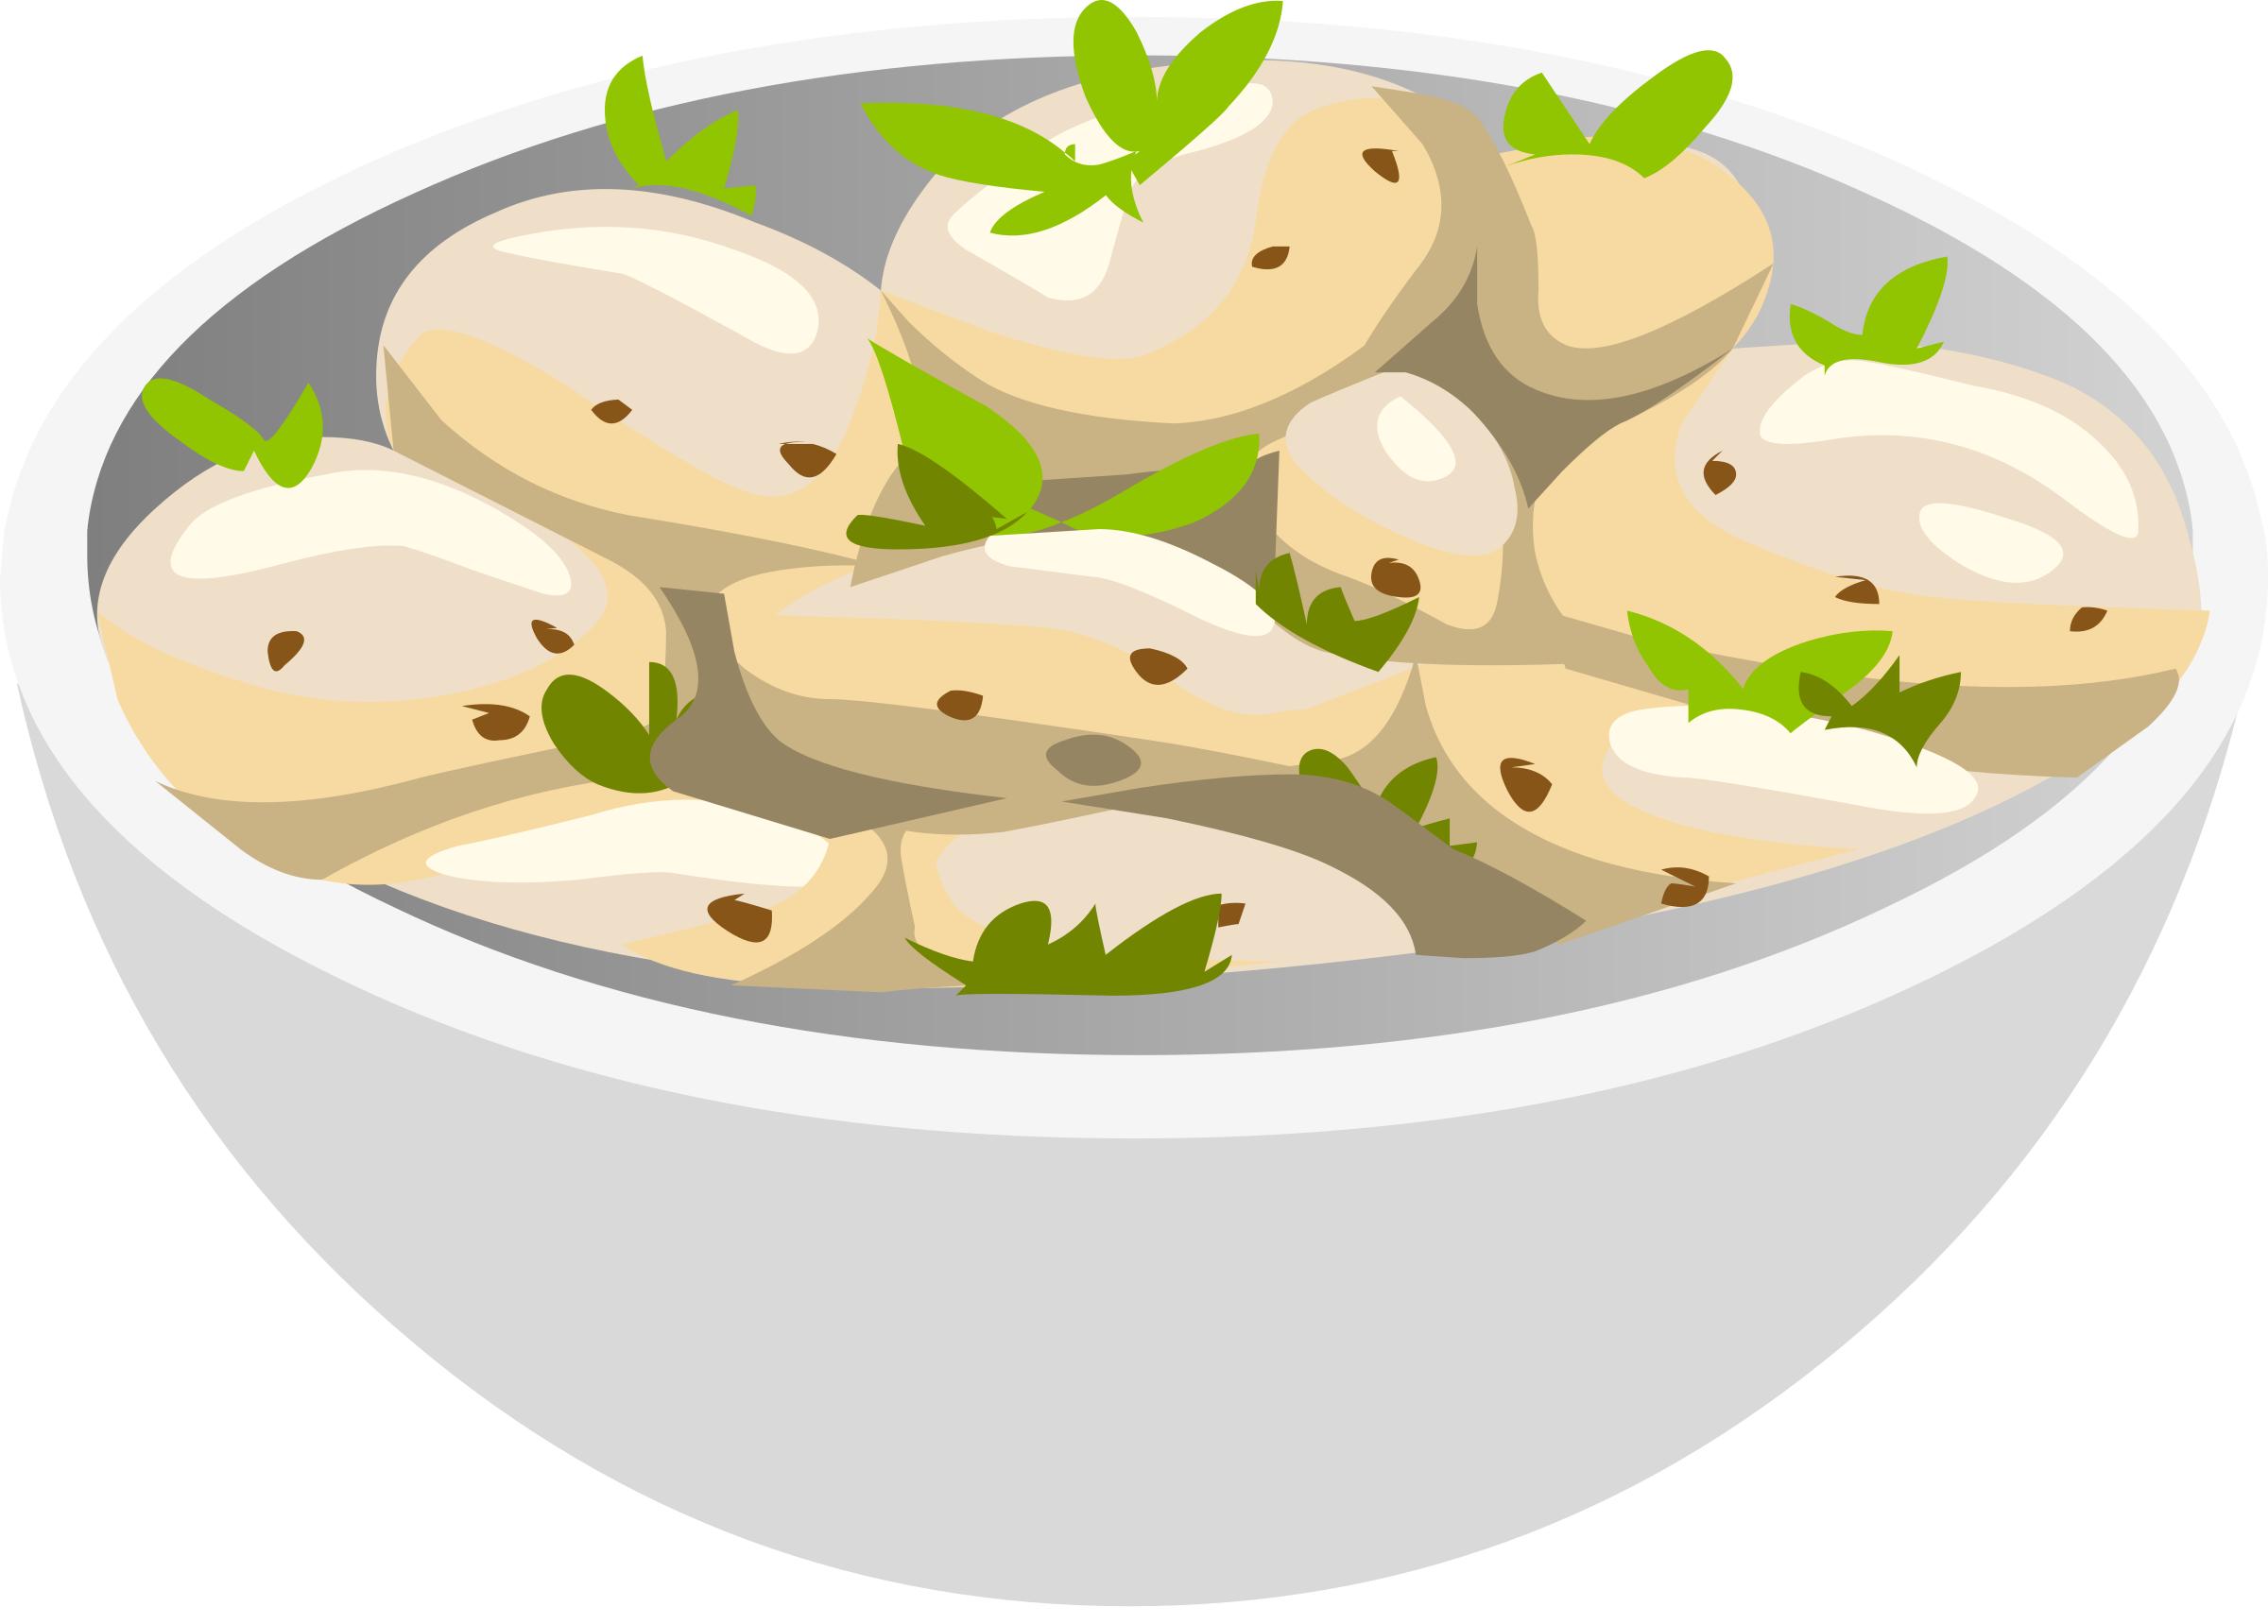 Food Precious Potato Salad icons